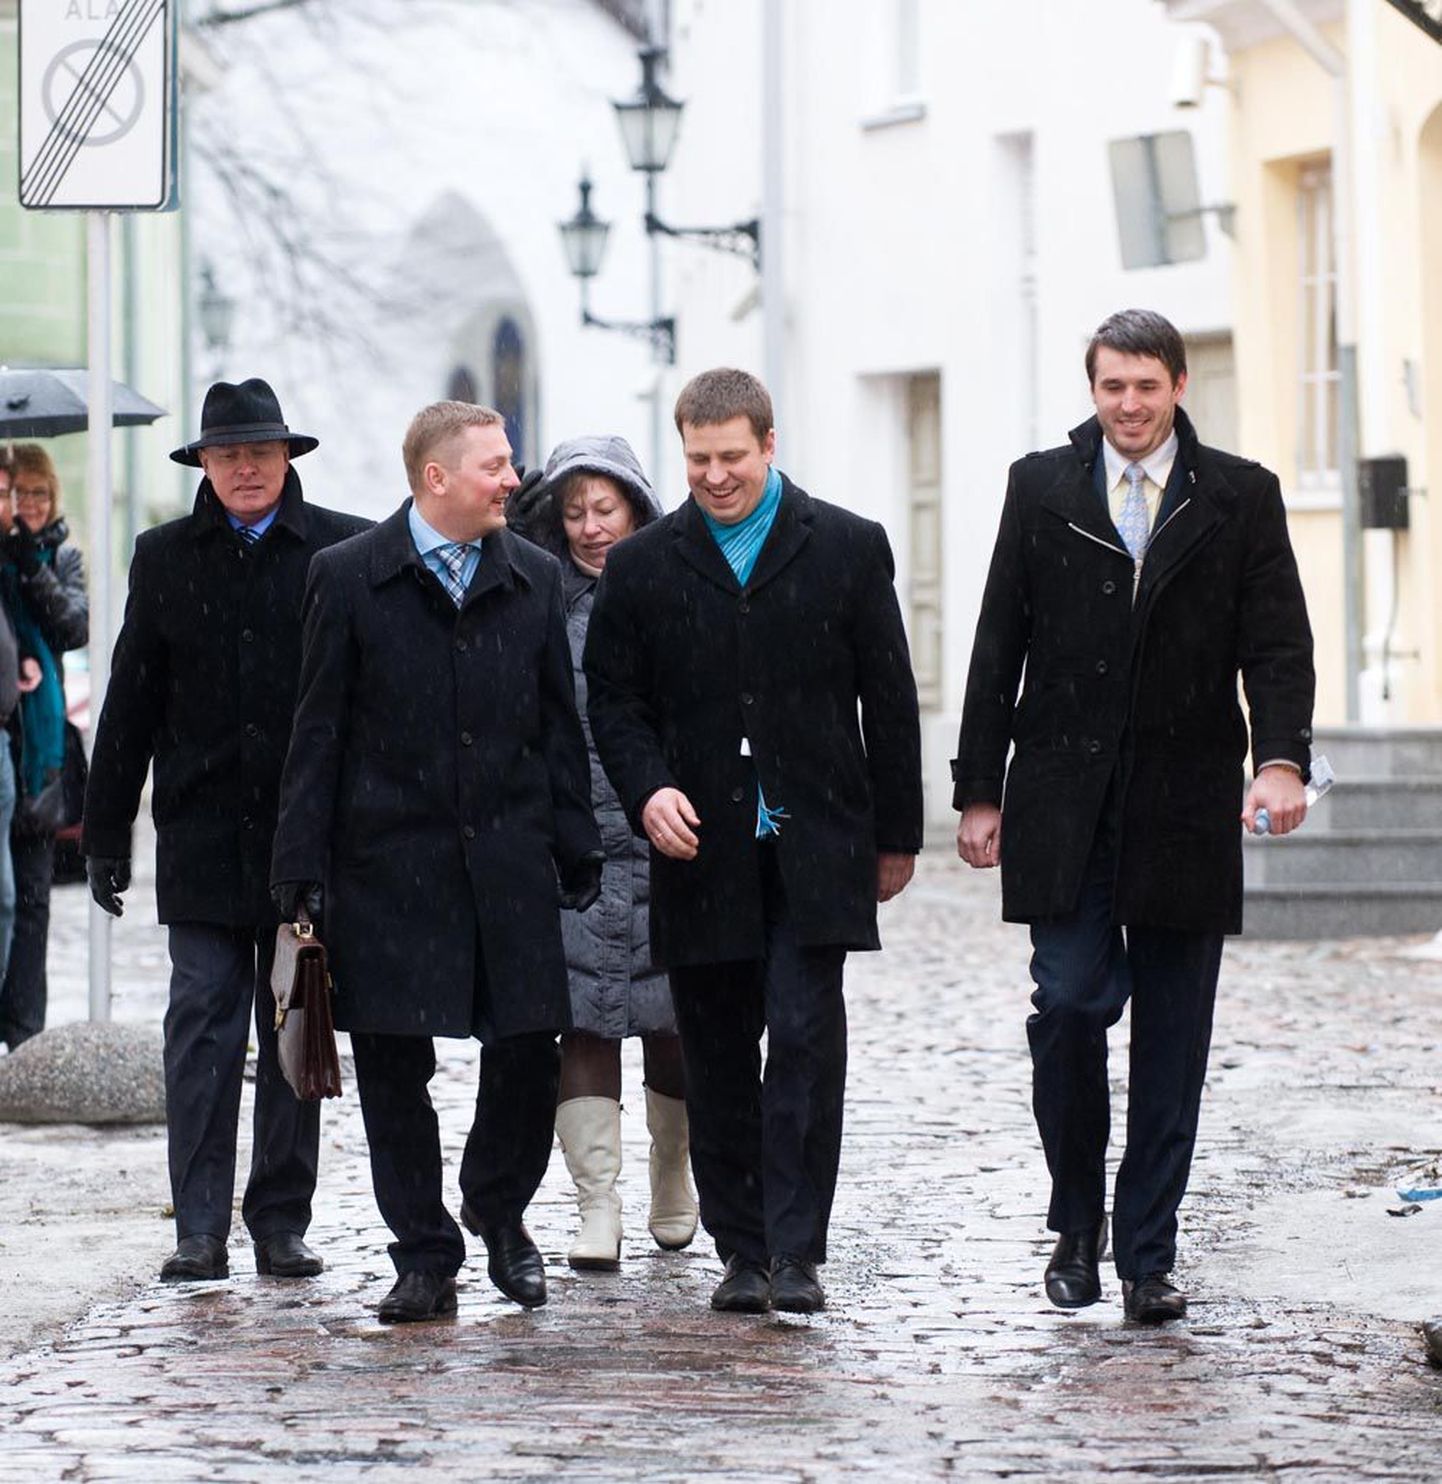 Keskerakonna juhatuse koosolekule suunduvad Kalle Laanet (vasakult), Deniss Boroditš, Jüri Ratas ja Rainer Vakra on sel pildil veel kõik ühes parteis. Laaneti väljaviskamine tekitas küsimuse, kas leidub veel lahkujaid.